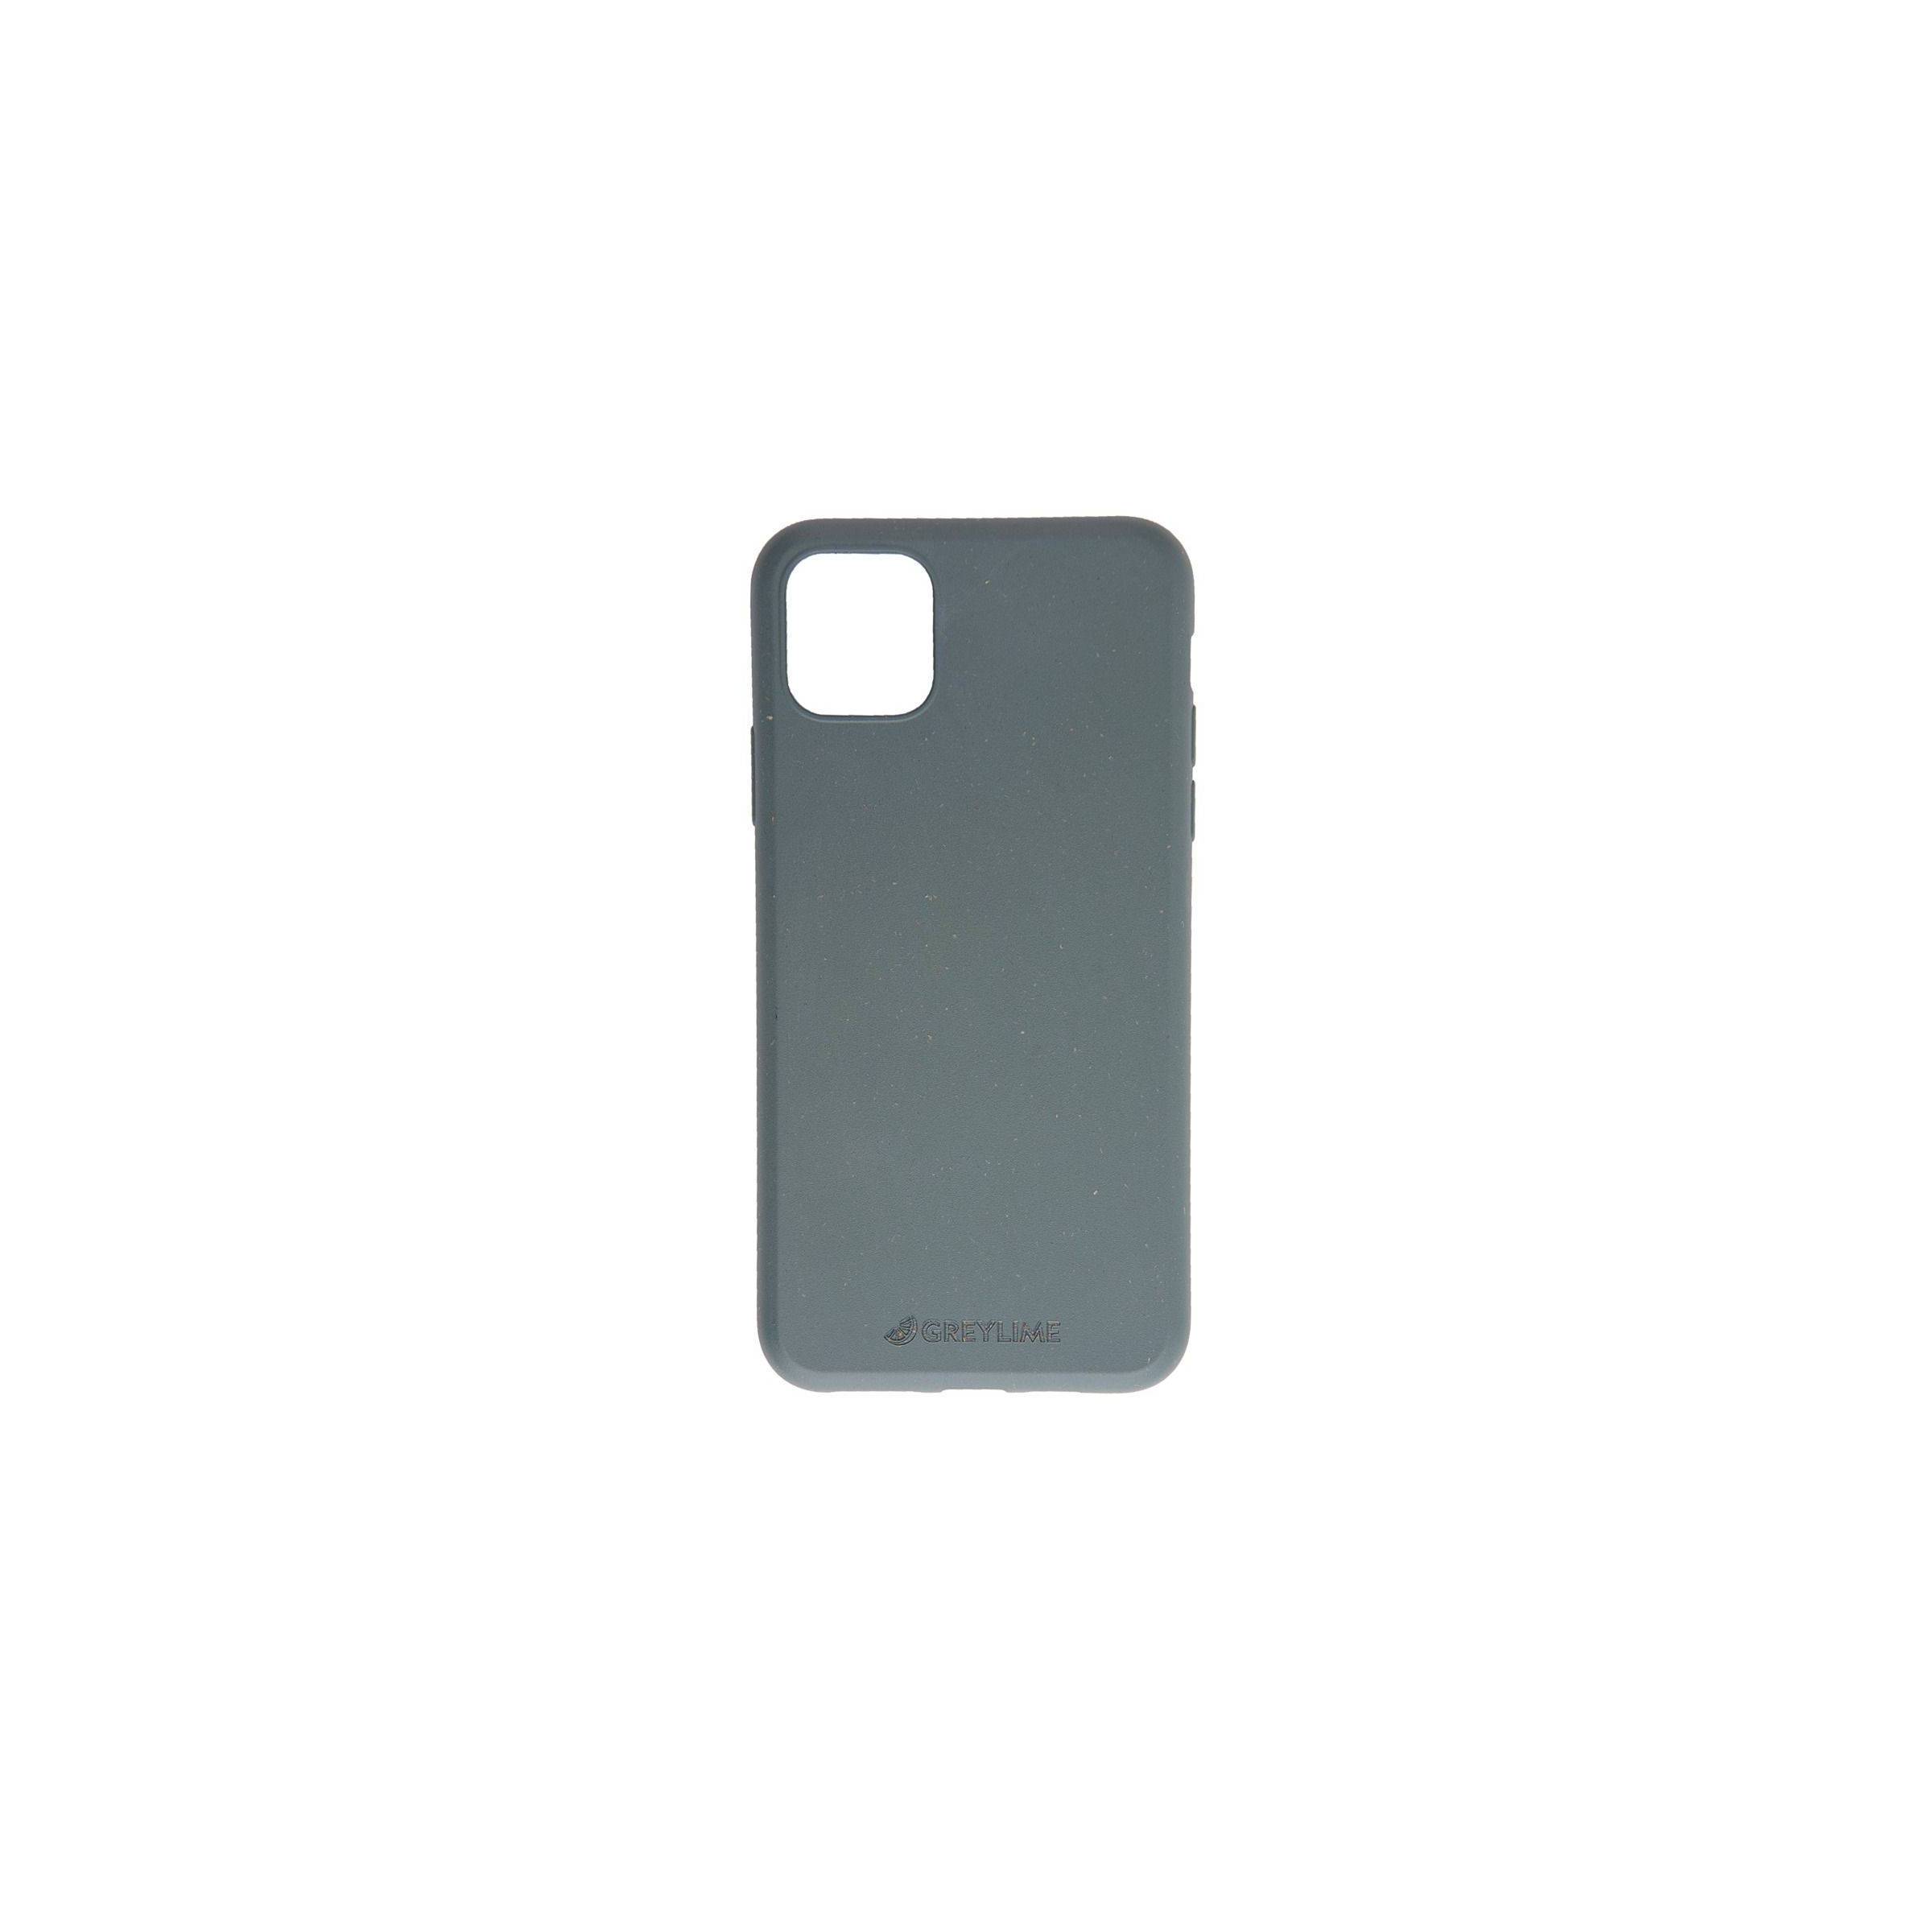 Bilde av Iphone 11 Pro Biodegradable Cover Greylime